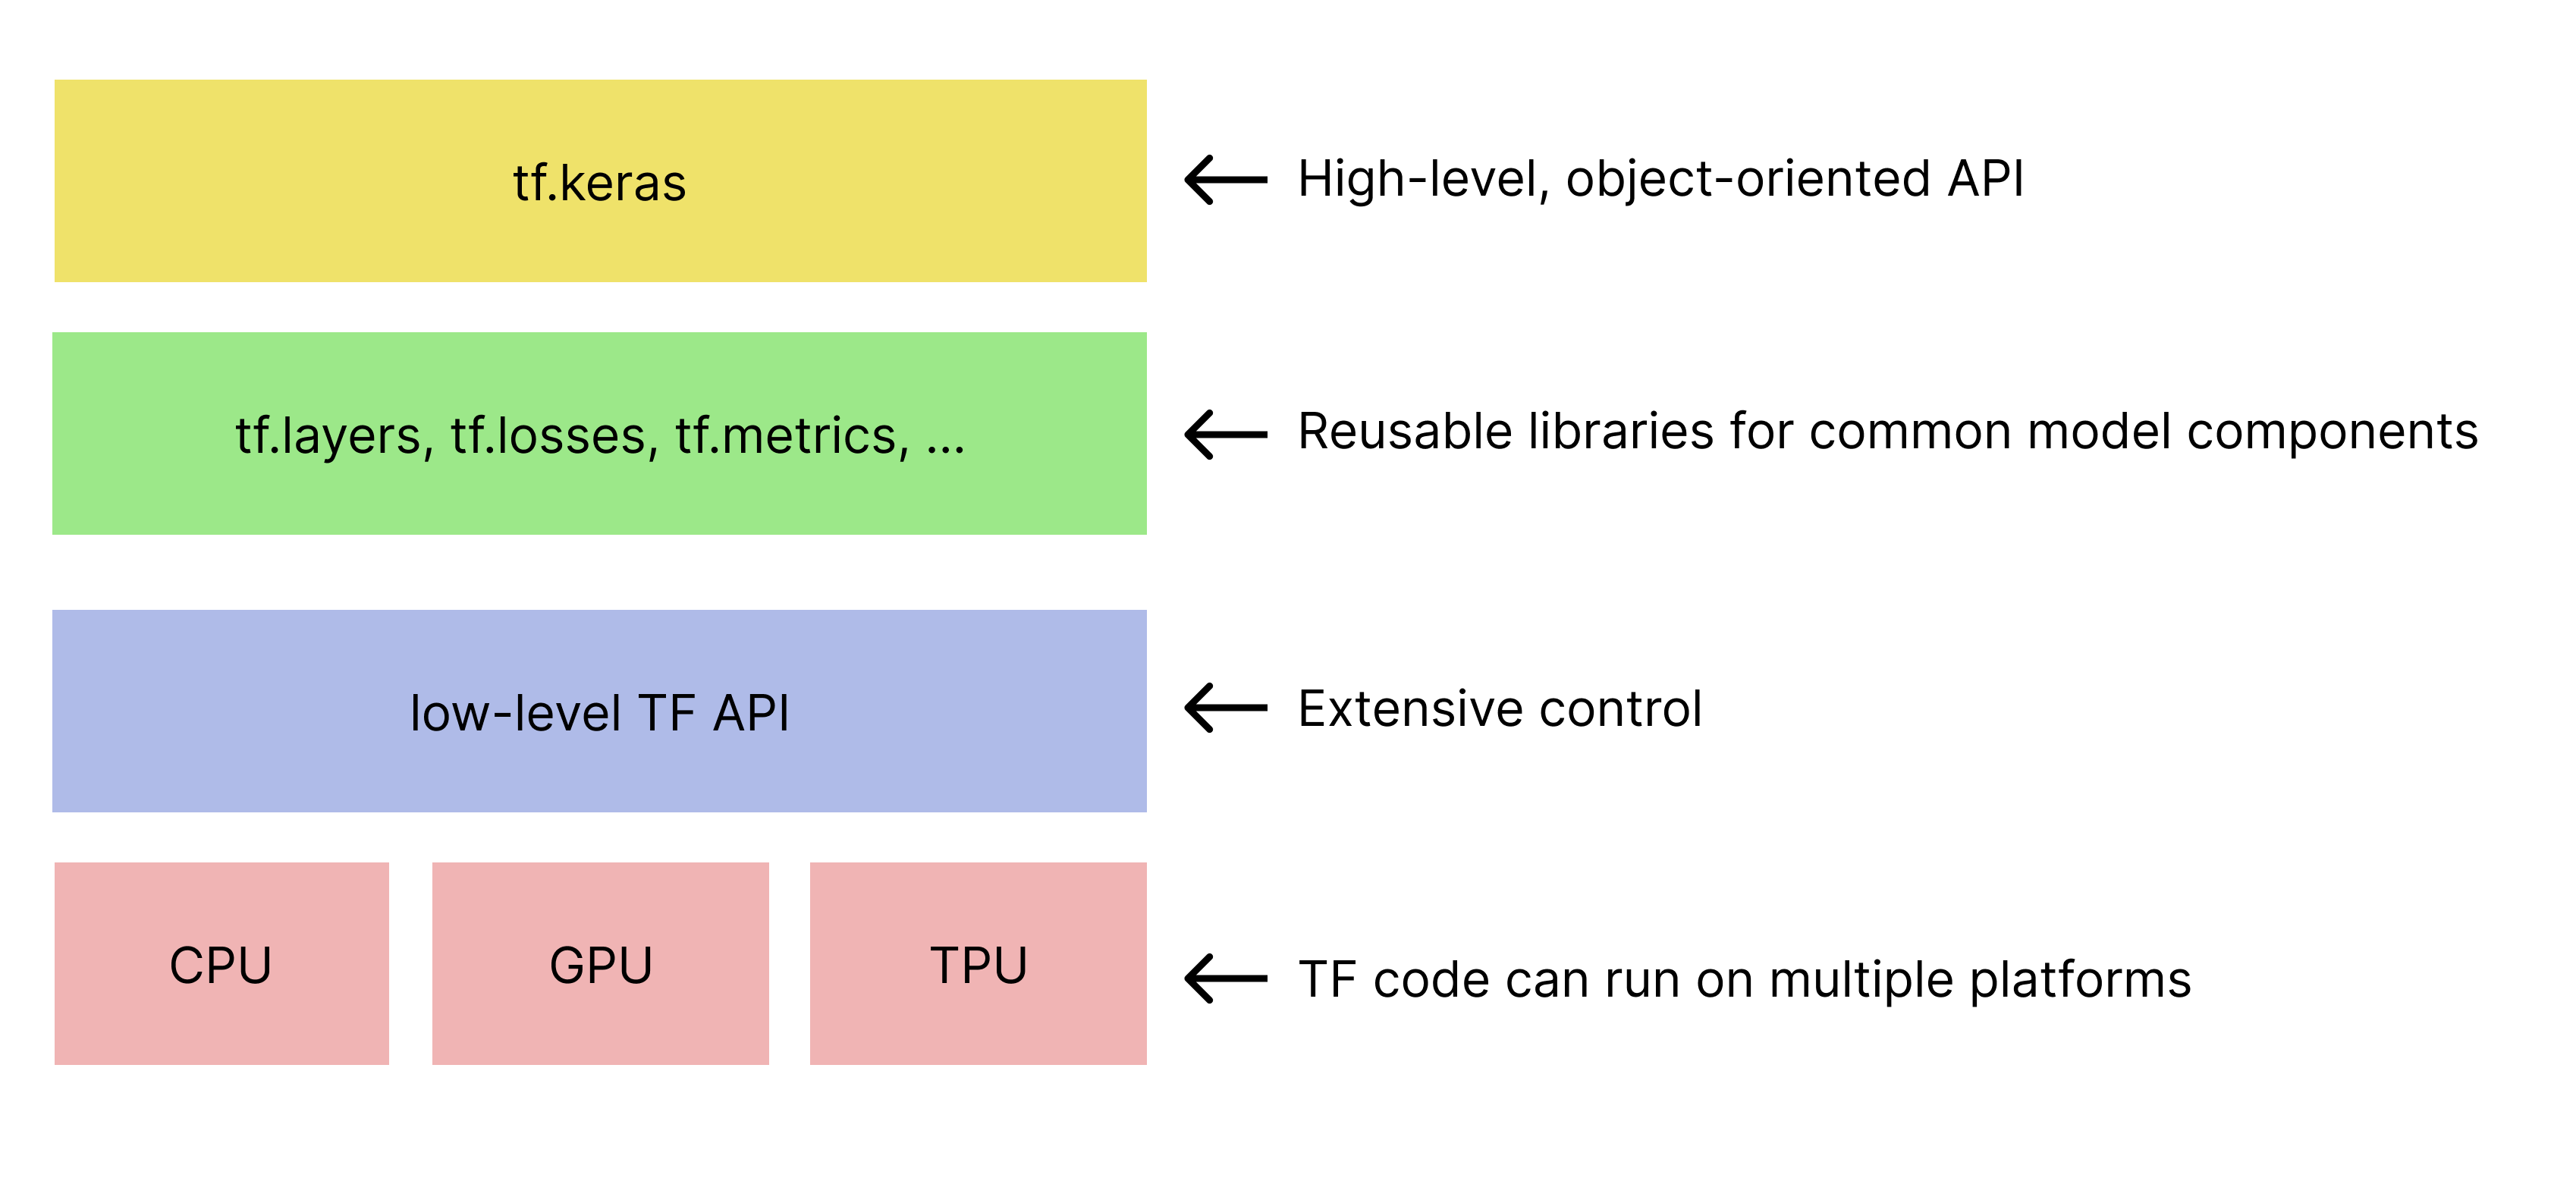 Упрощенная иерархия наборов инструментов TensorFlow. tf.keras API находится на вершине.